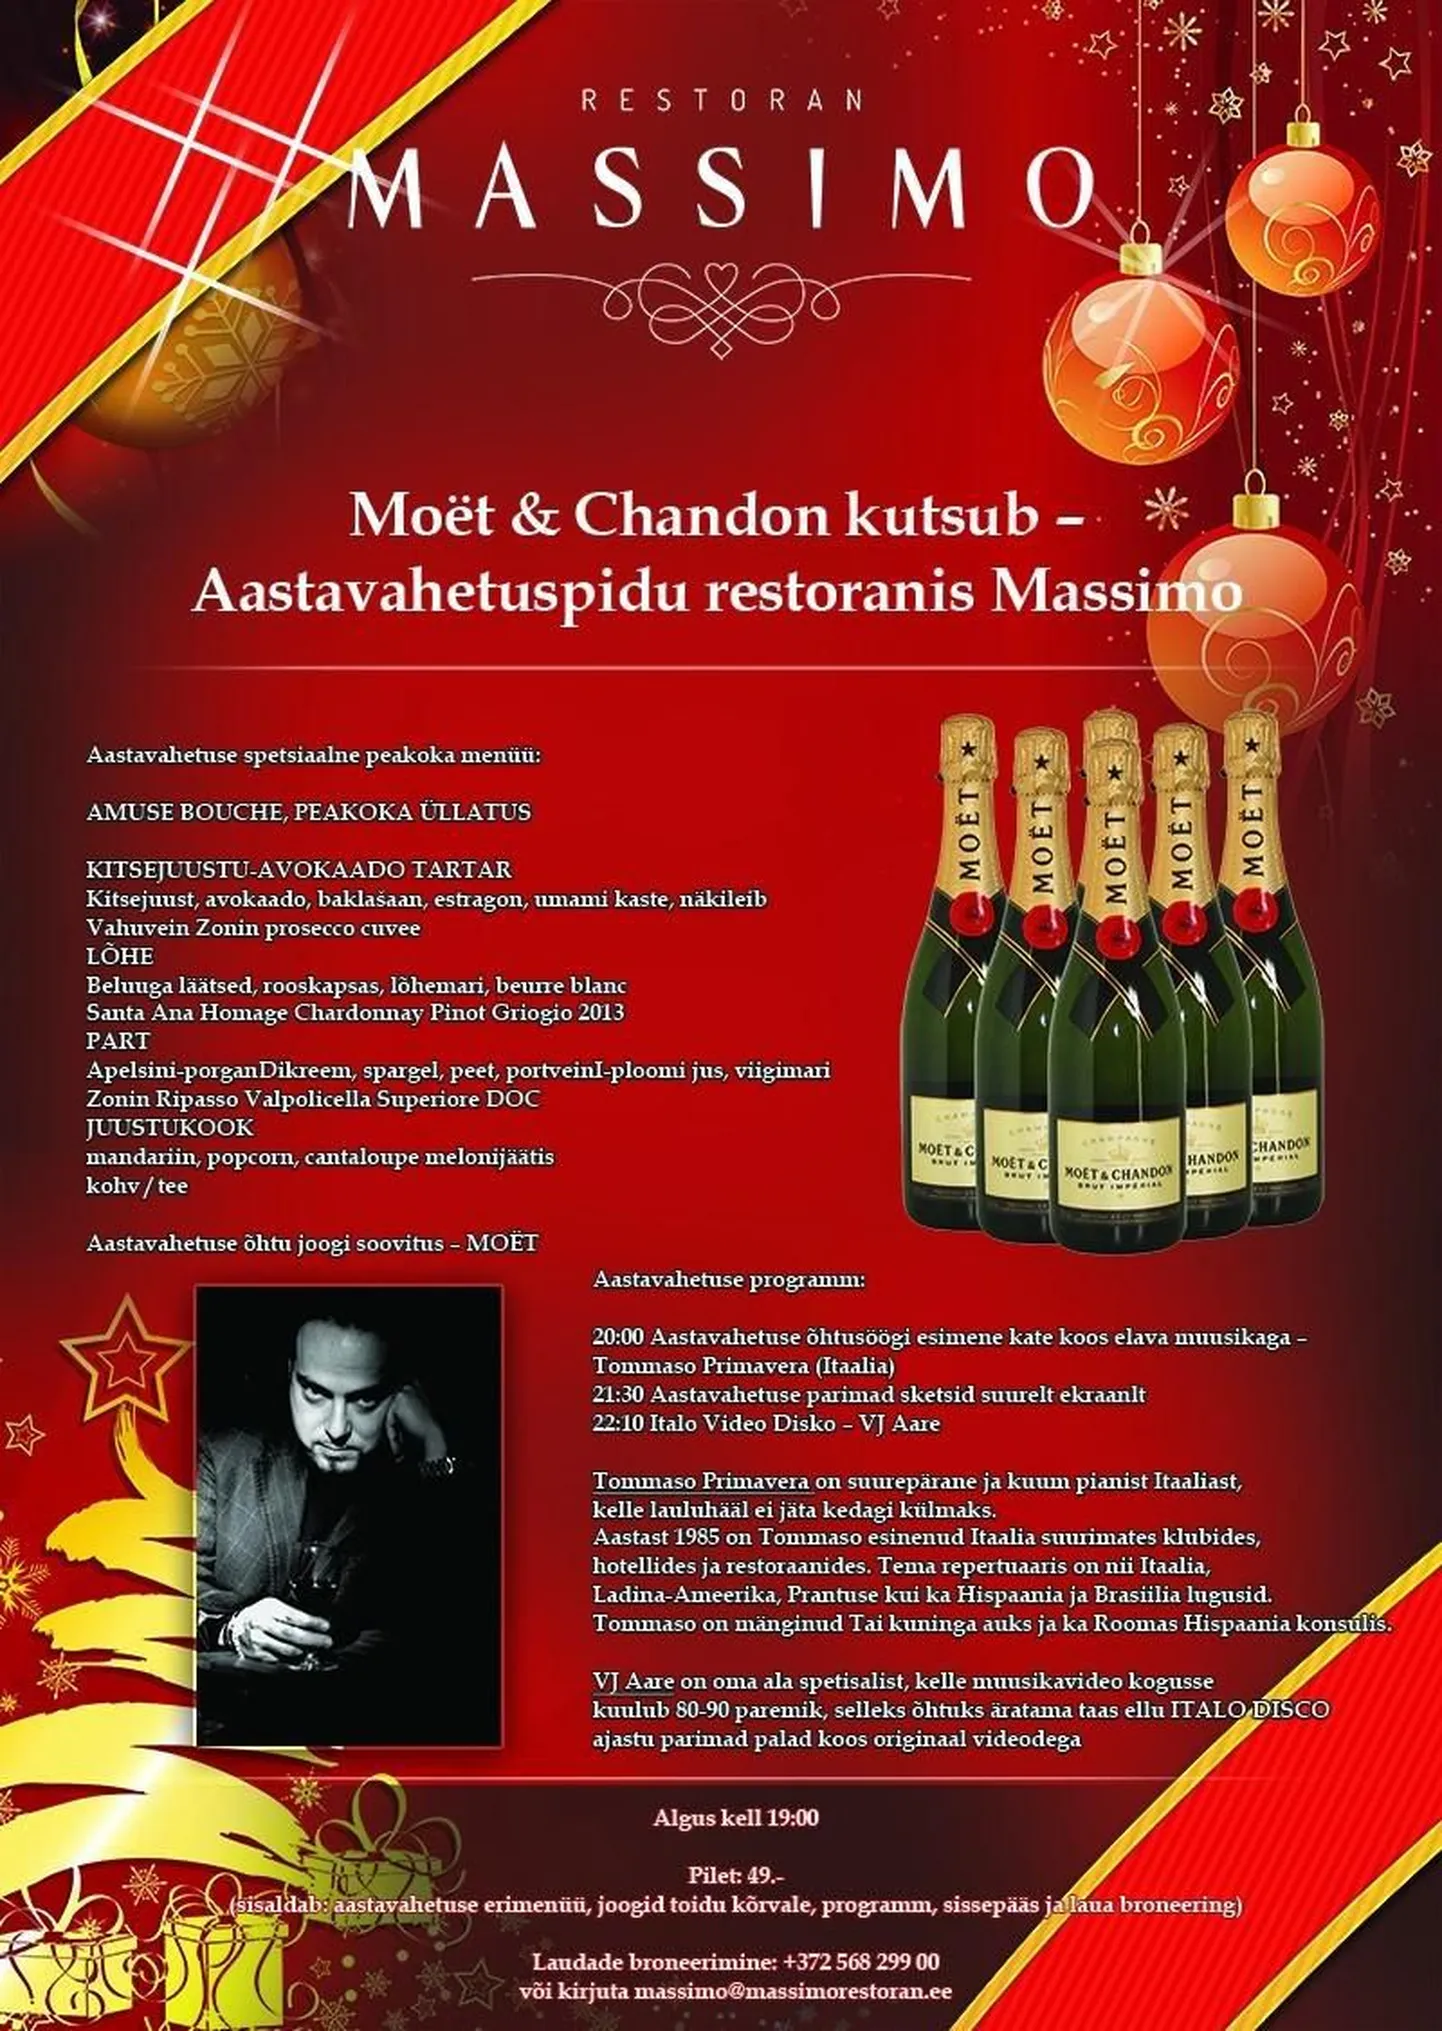 Moët & Chandon kutsub - Aastavahetuspidu restoranis Massimo